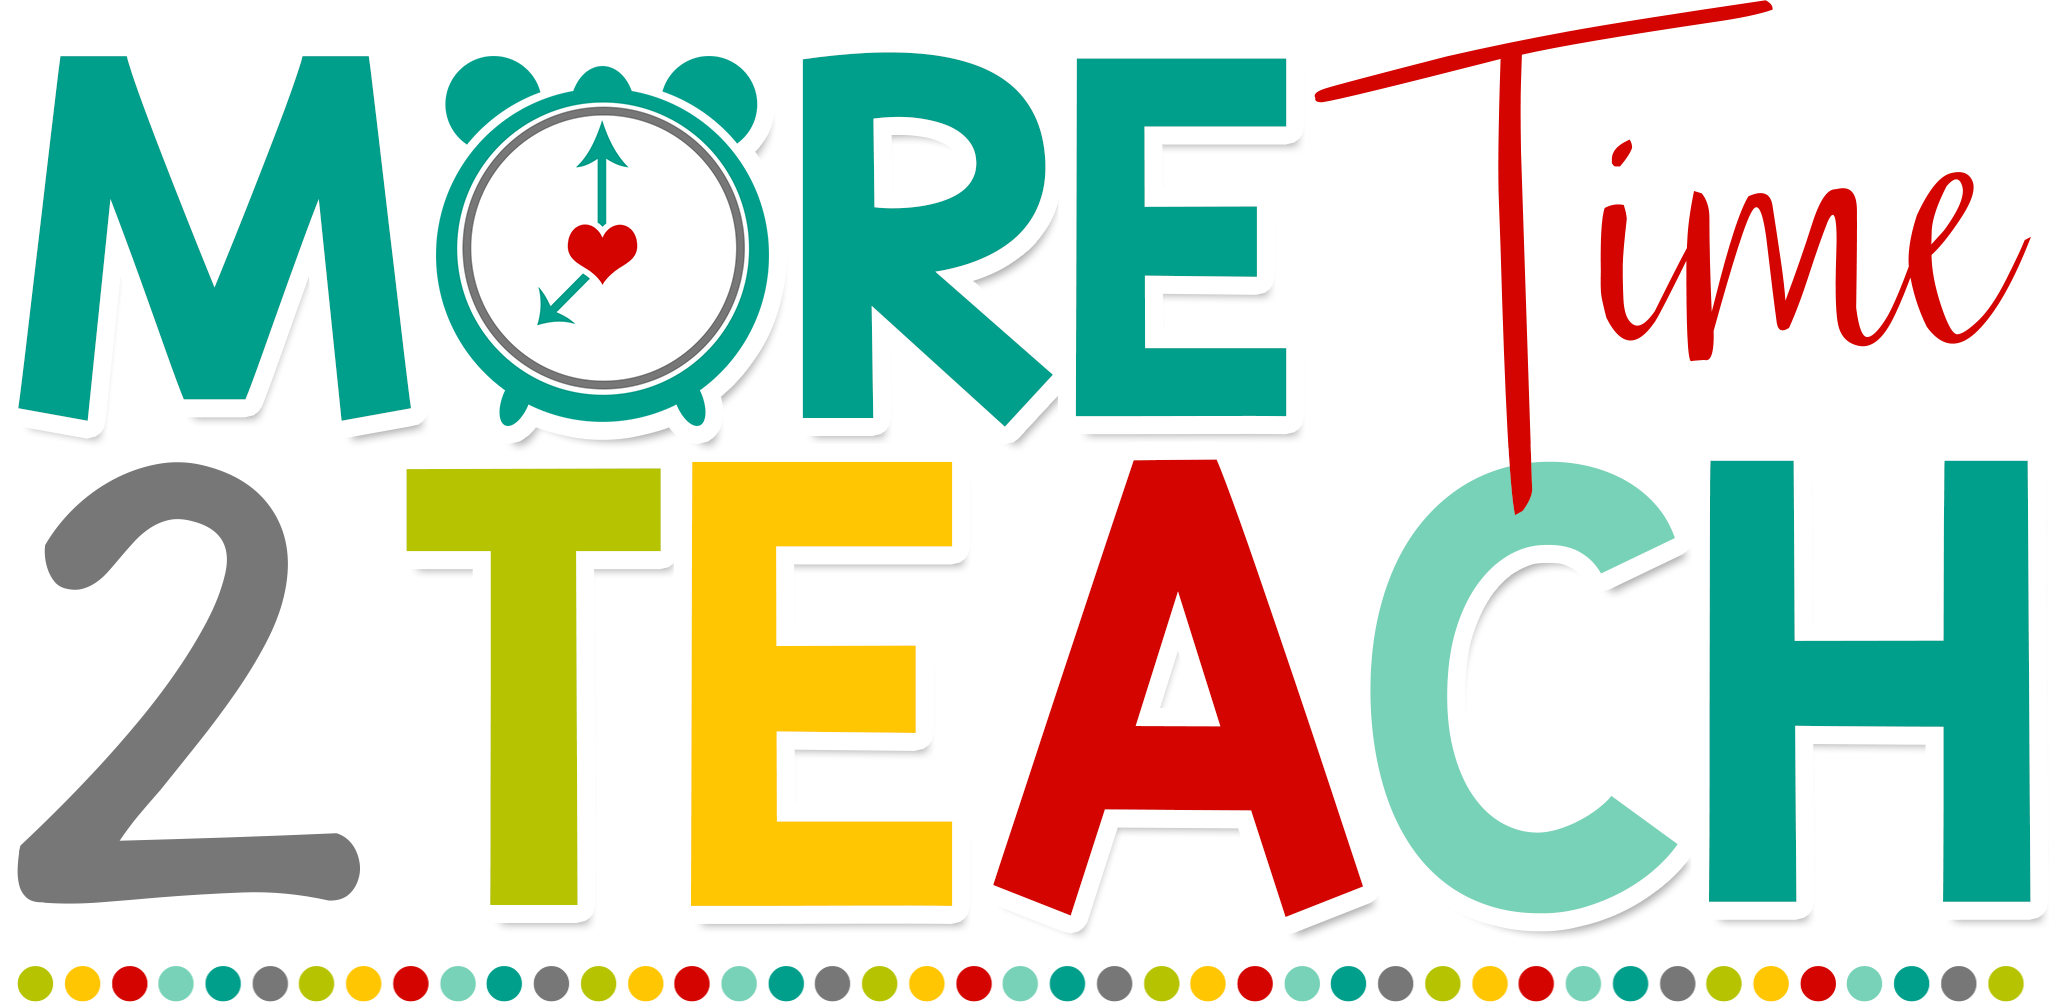 More Time 2 Teach